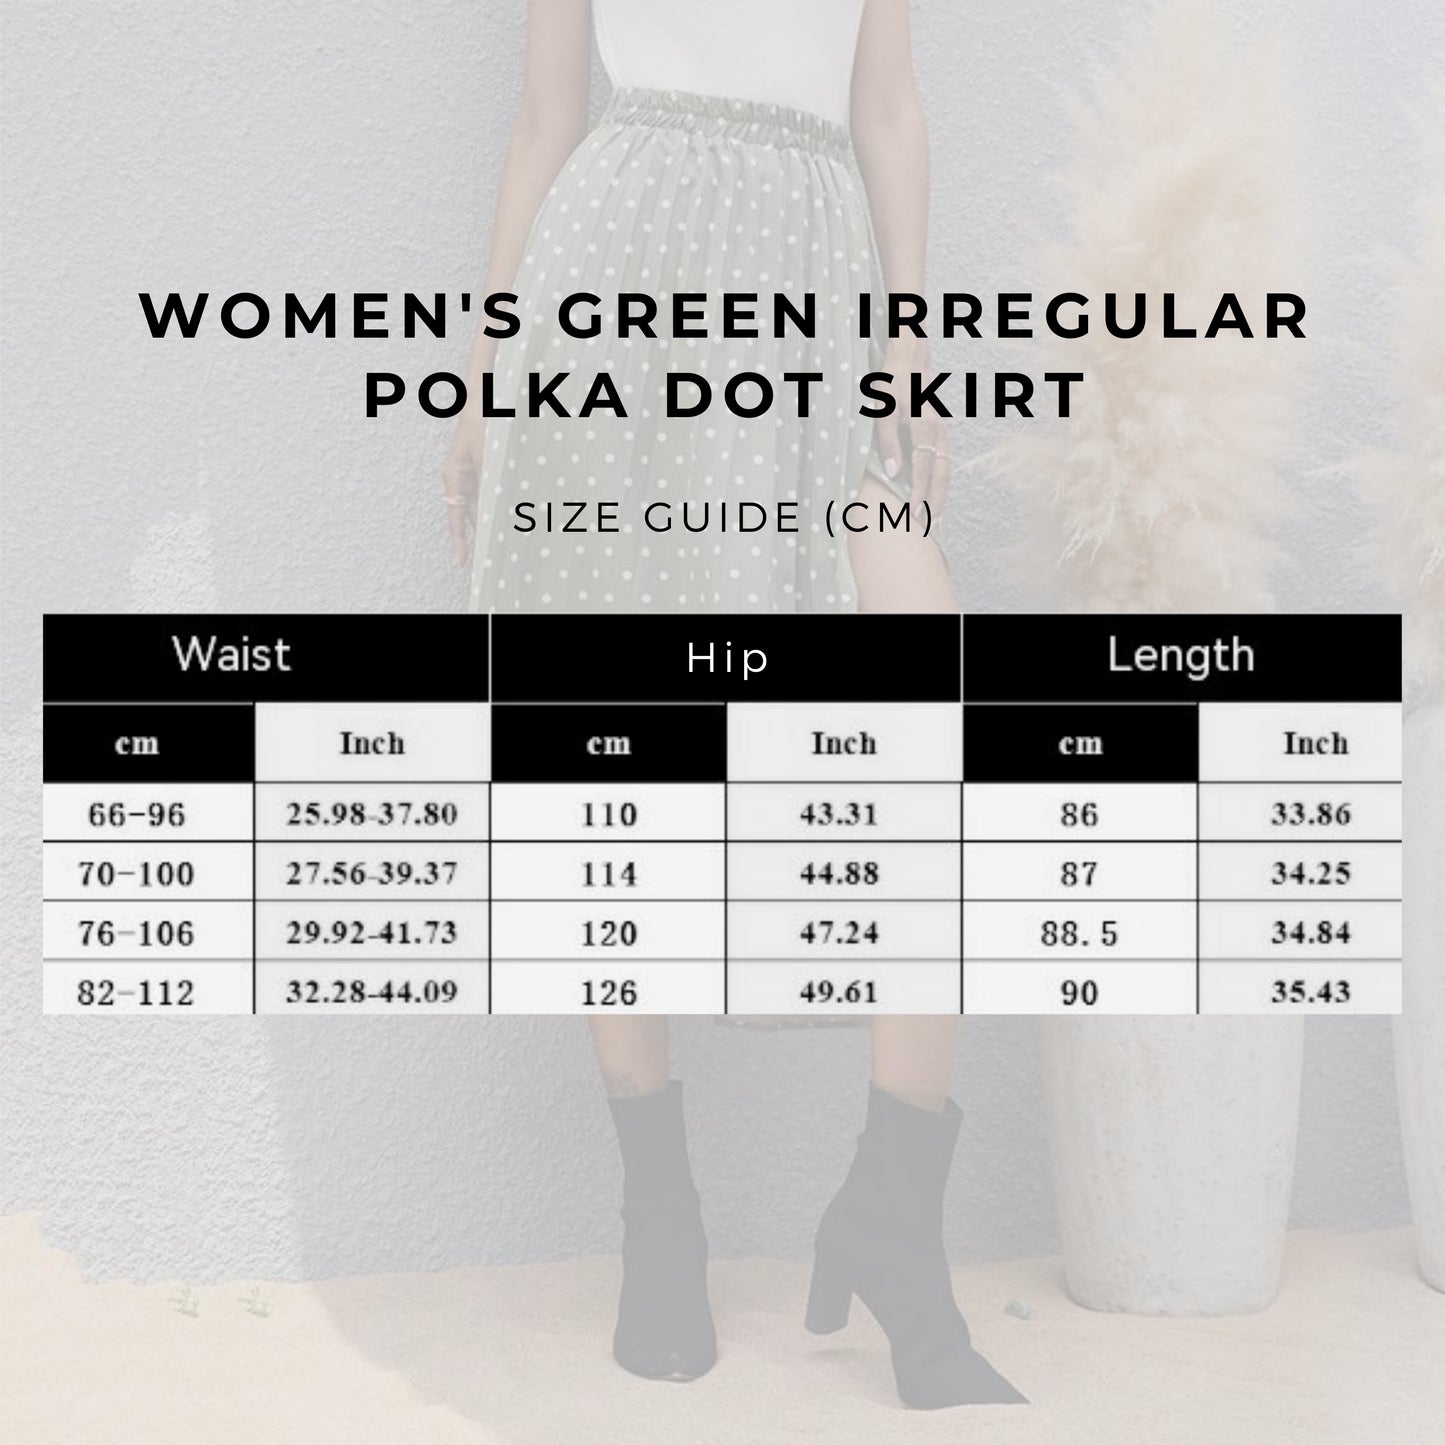 Women's Green Irregular Polka Dot Skirt